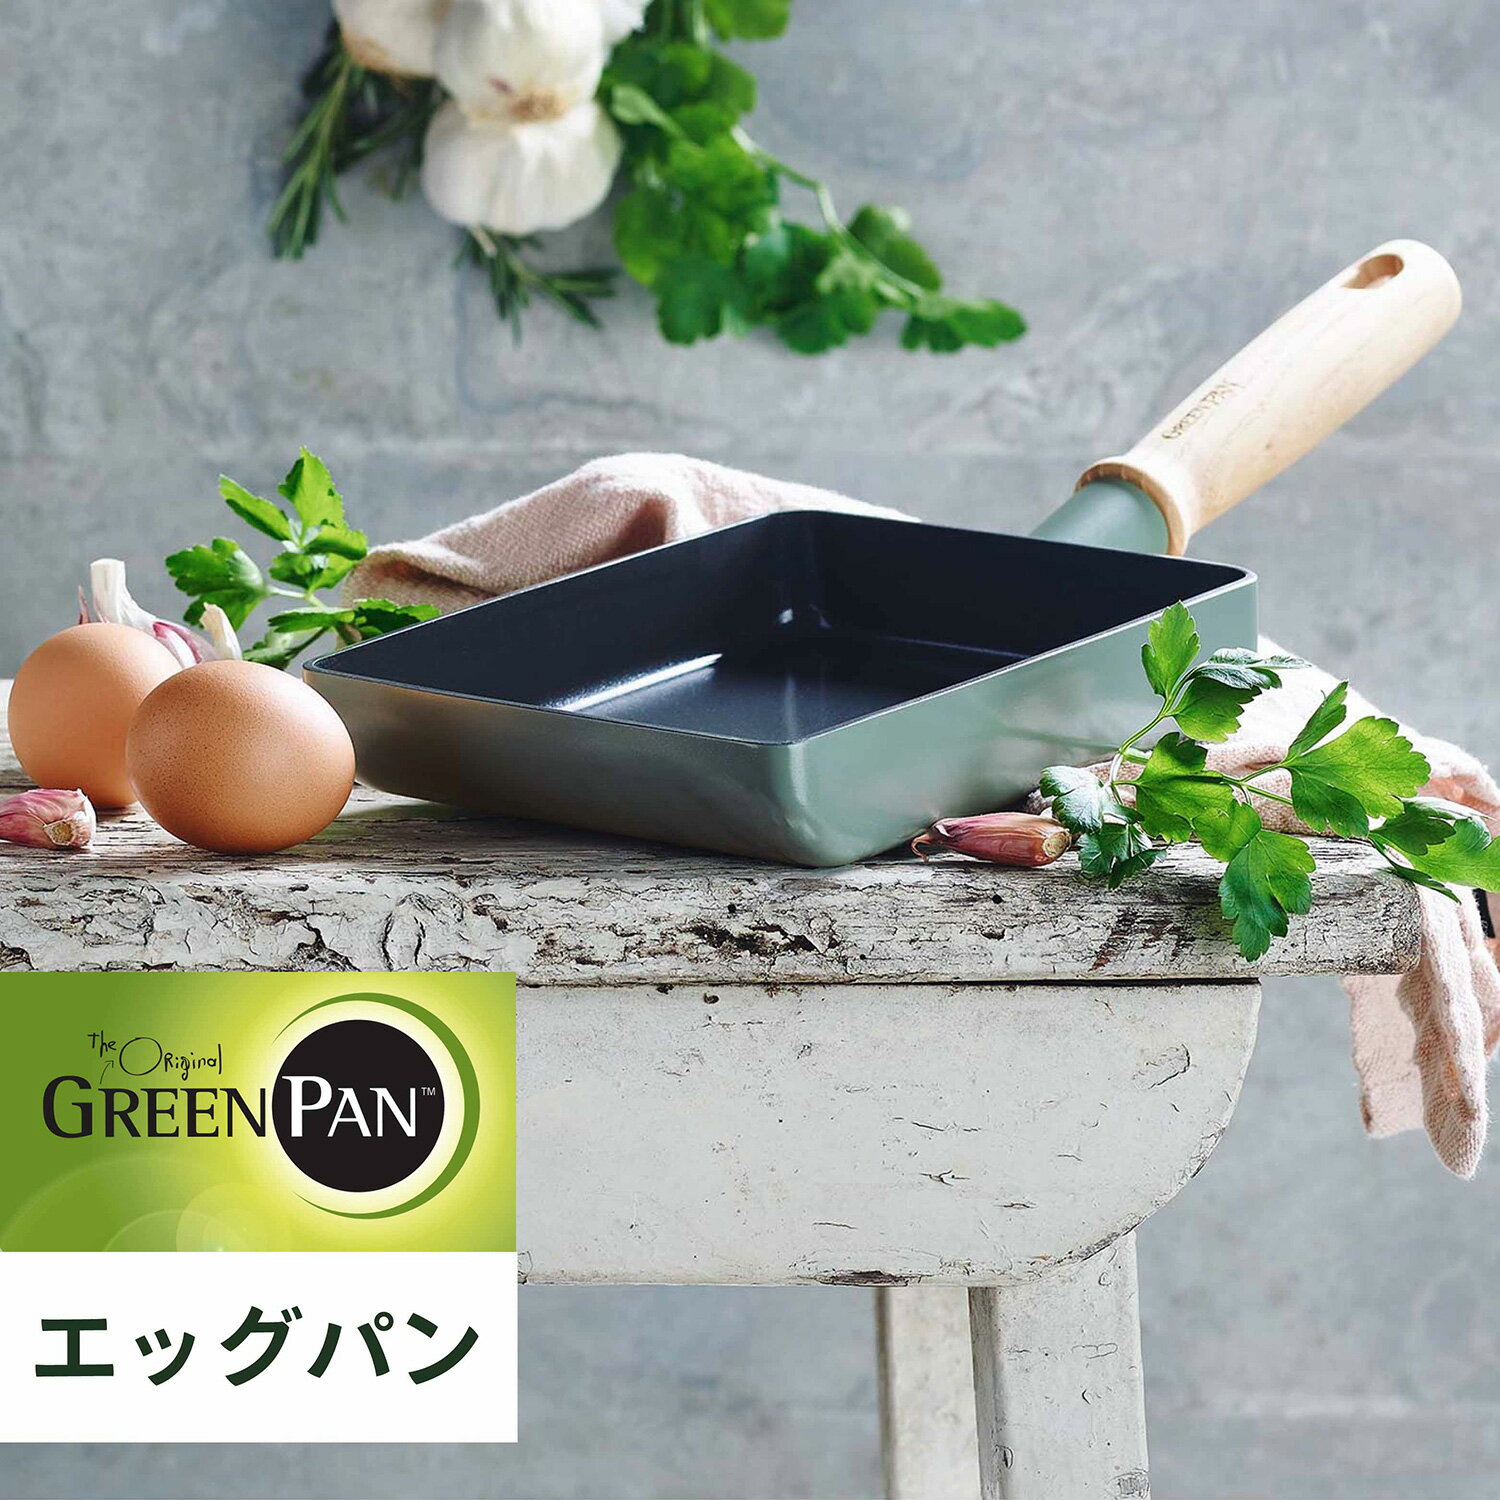 GREENPAN グリーンパン 卵焼き器 フライパン エッグパン メイフラワー IH ガス対応 MAY FLOWER CC001901-001